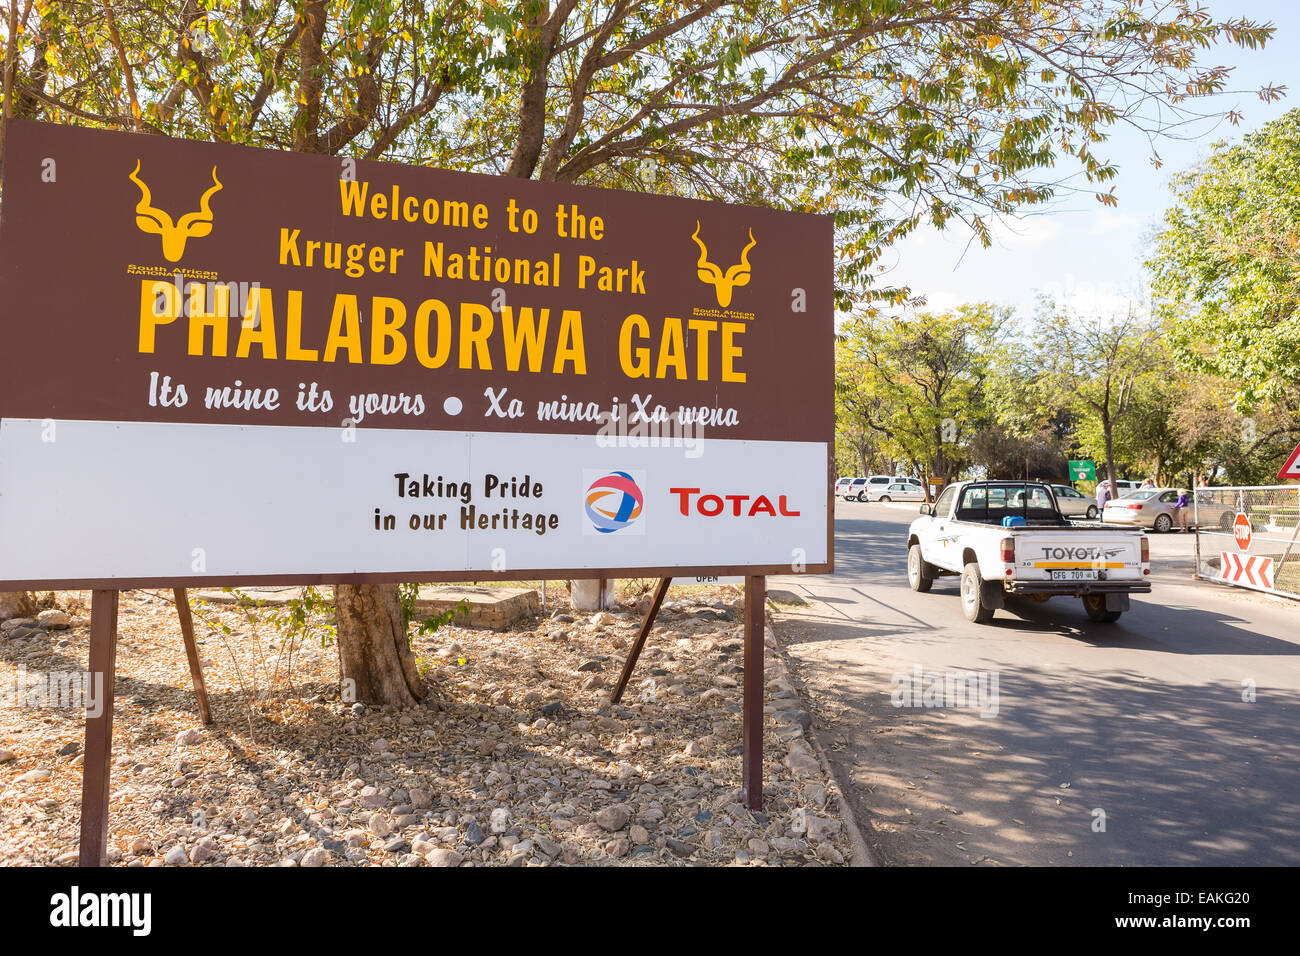 Le parc national Kruger, AFRIQUE DU SUD - Phalaborwa Gate panneau d'entrée. Banque D'Images